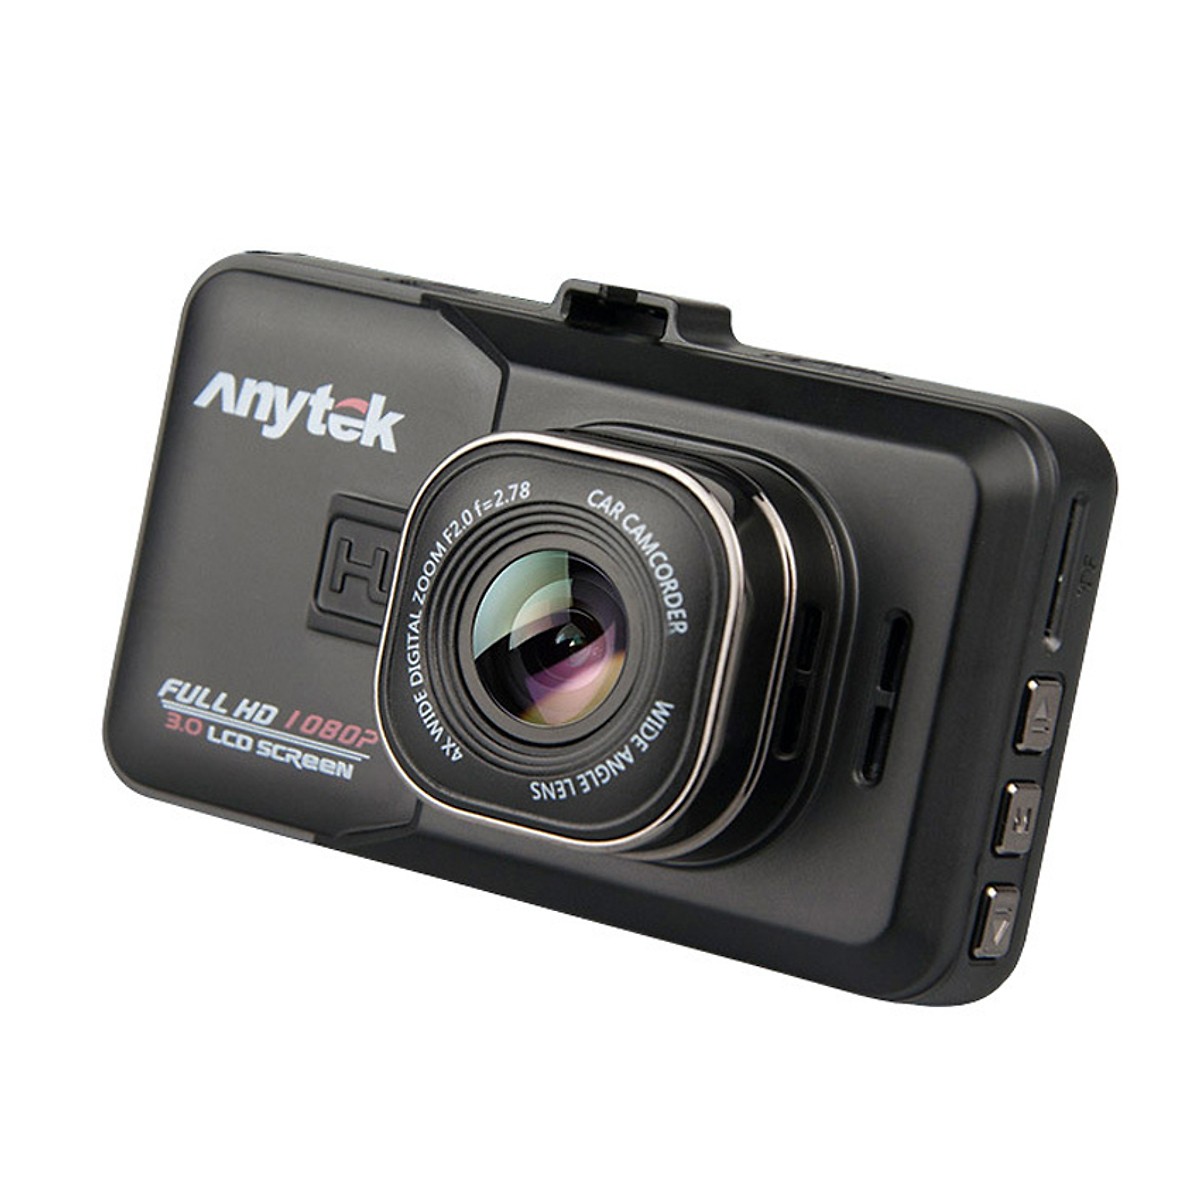 Camera hành trình Anytek A98